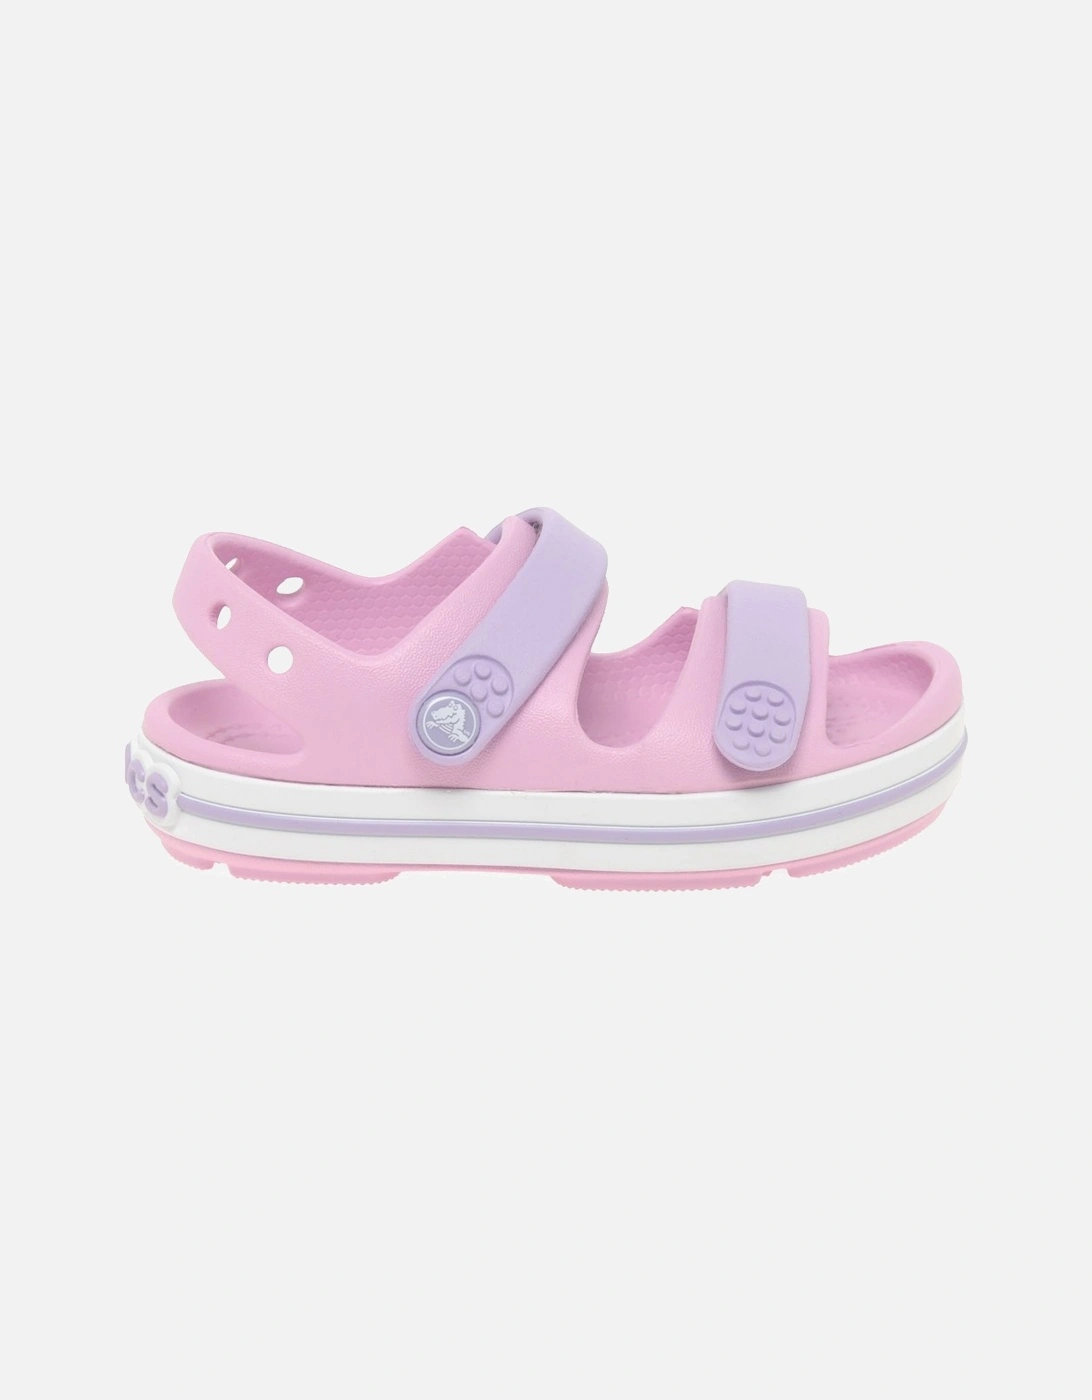 Crocband Girls Infant Sandals